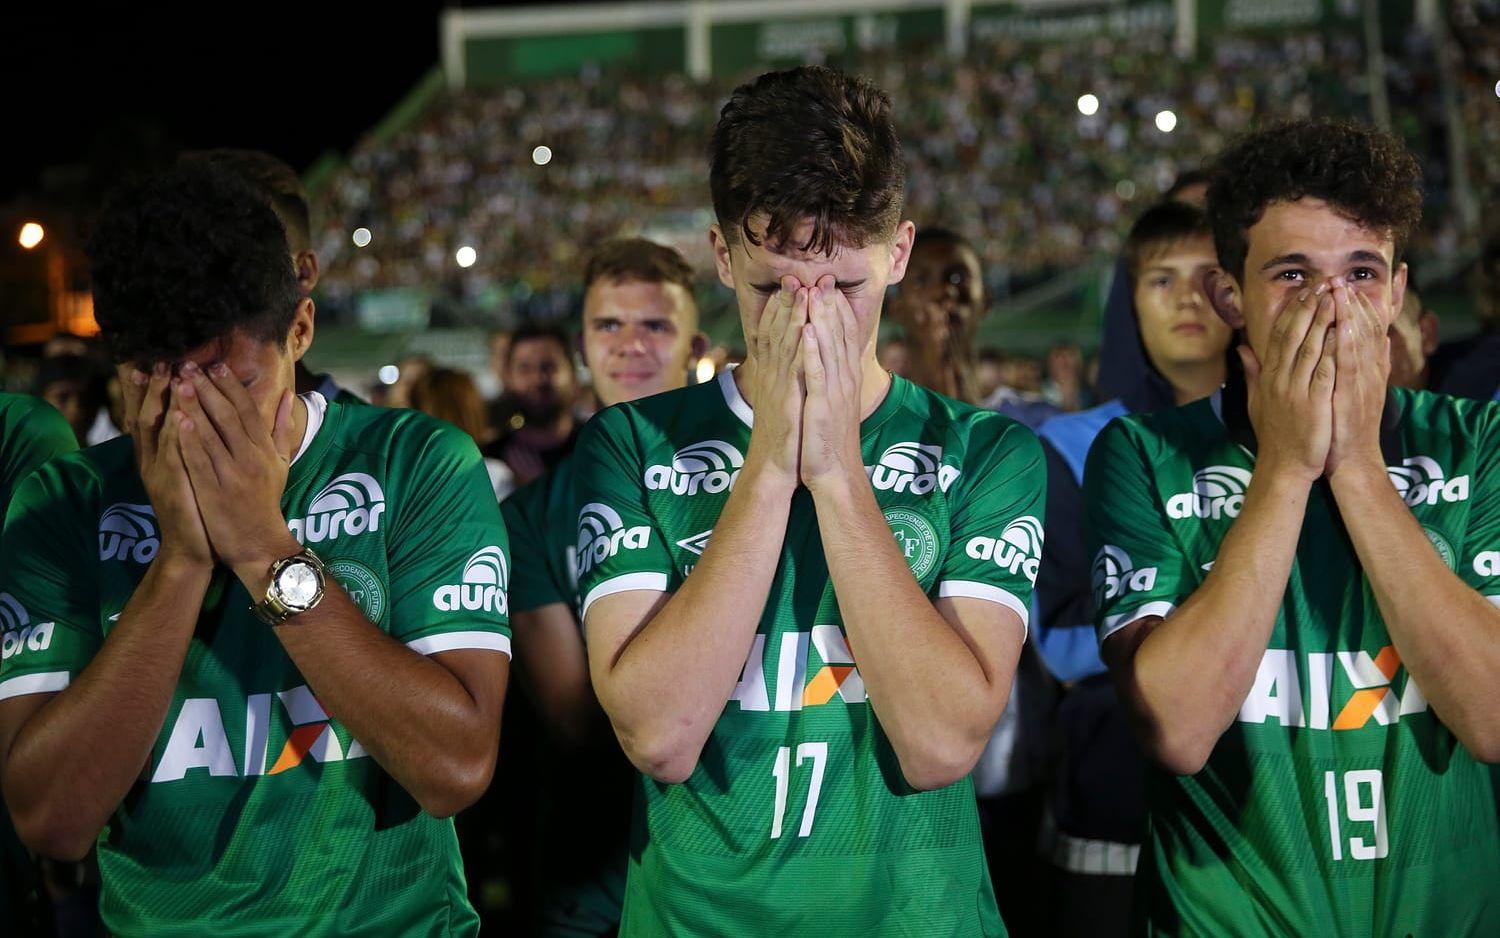 Både supportrar och fotbollsspelare sörjde och visade sitt stöd för Chapecoense. Foto: TT